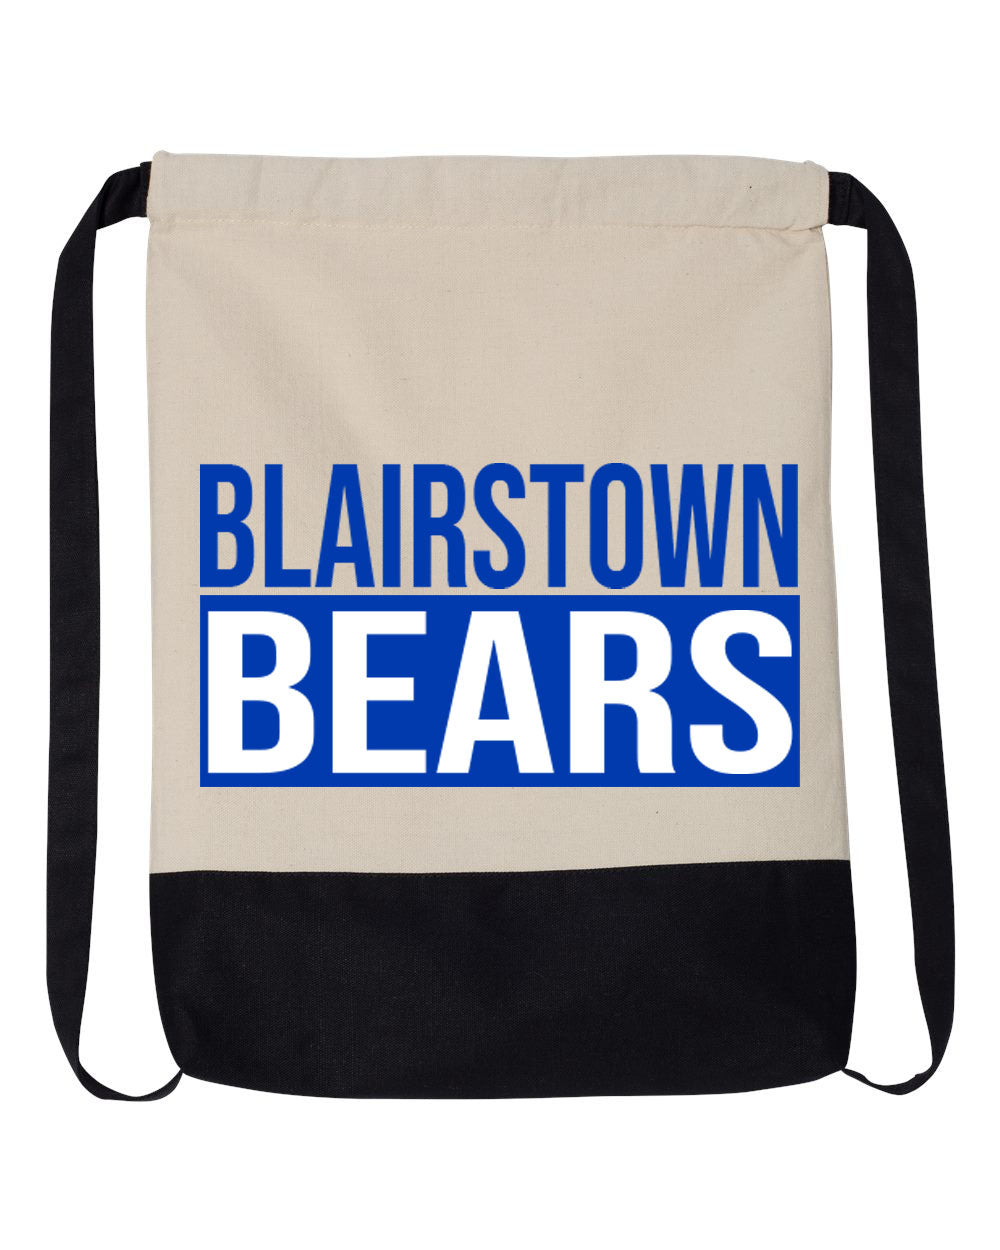 Blairstown Bears Drawstring Bag Design 12